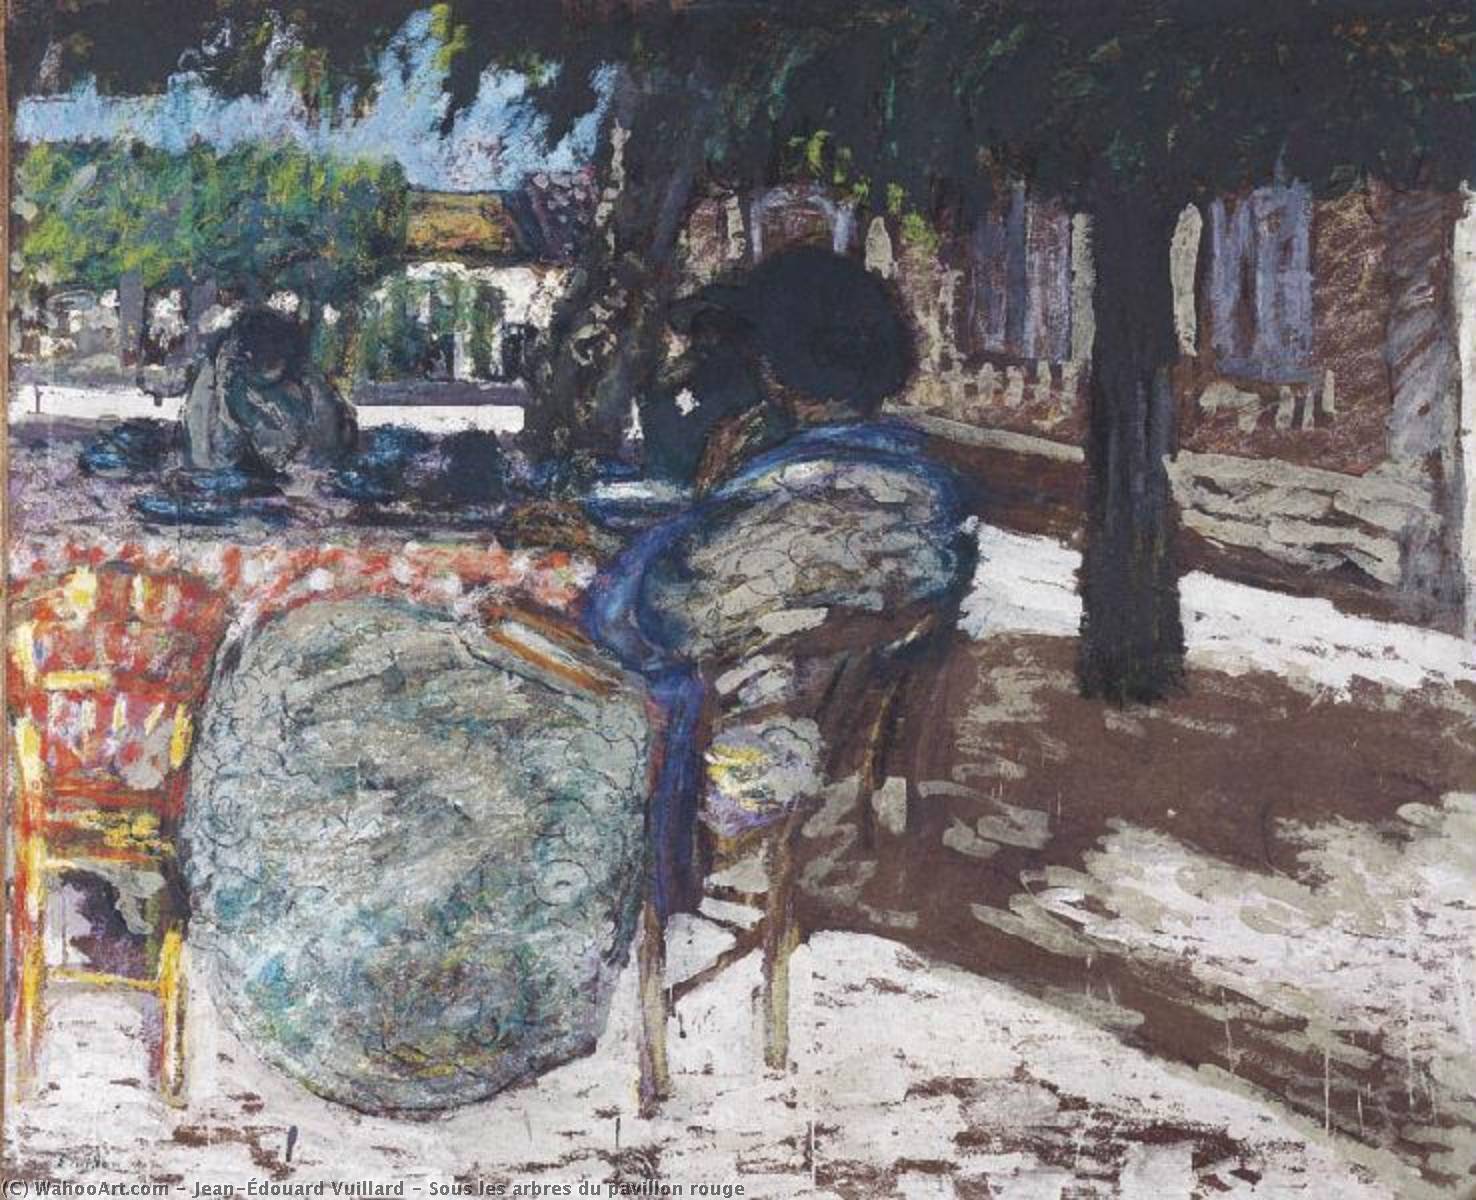 Comprar Reproducciones De Arte Del Museo Sous les arbres du pavillon rouge de Jean Edouard Vuillard (1868-1940, France) | ArtsDot.com